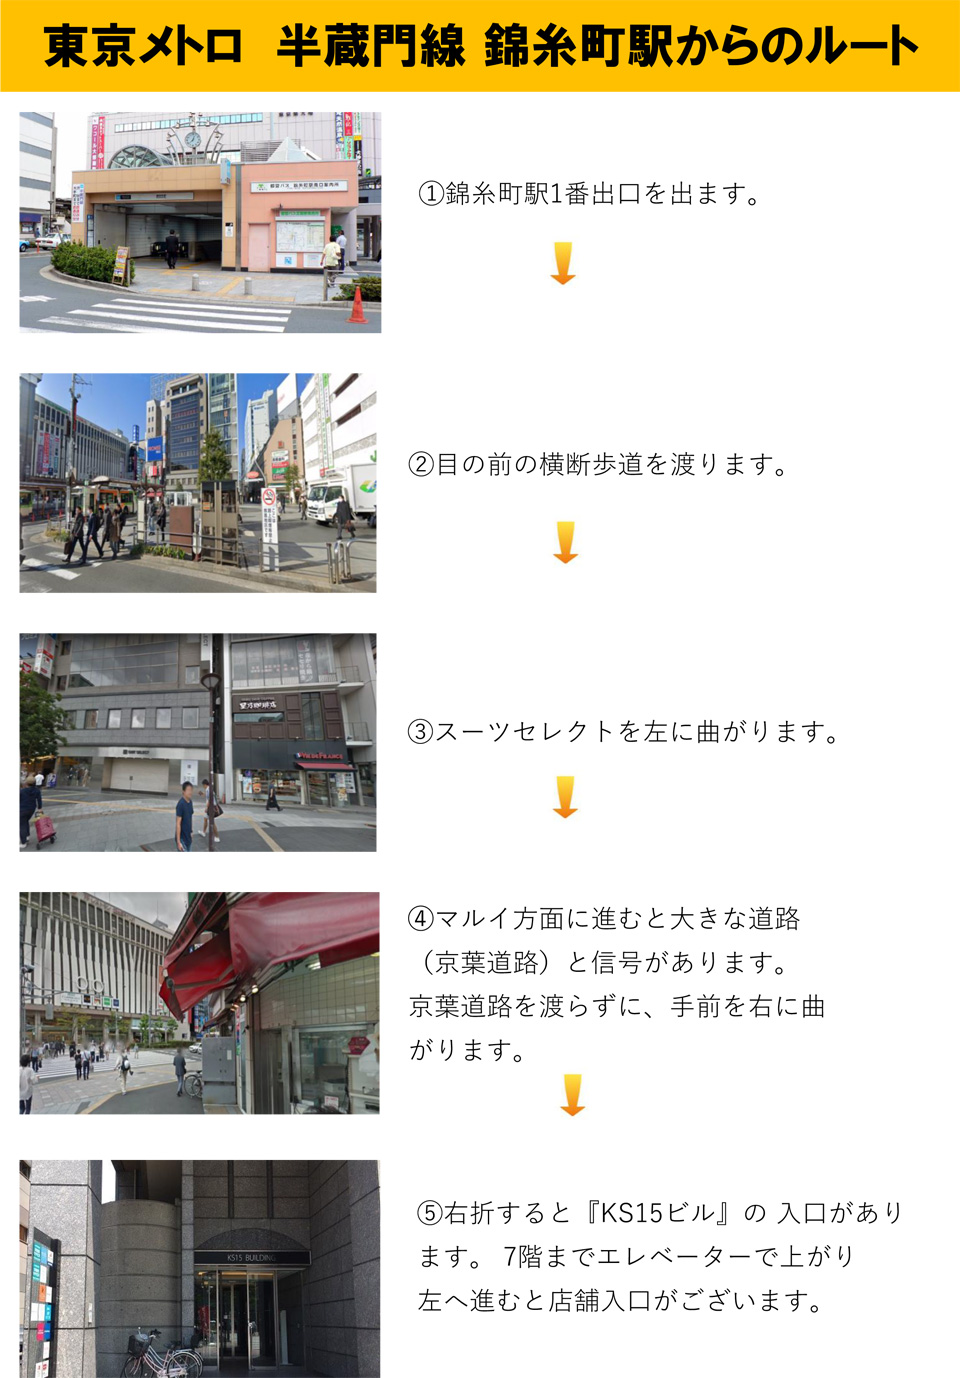 東京メトロ半蔵門線錦糸町駅からのルート：錦糸町駅1番出口を出ます→目の前の横断歩道を渡ります→スーツセレクトを左に曲がります→マルイ方面に進むと大きな道路(京葉道路)と信号があります。京葉道路を渡らずに、手前を右に曲がります→右折すると「KS15ビル」の入口があります。7階までエレベーターで上がり左へ進むと店舗入口がございます